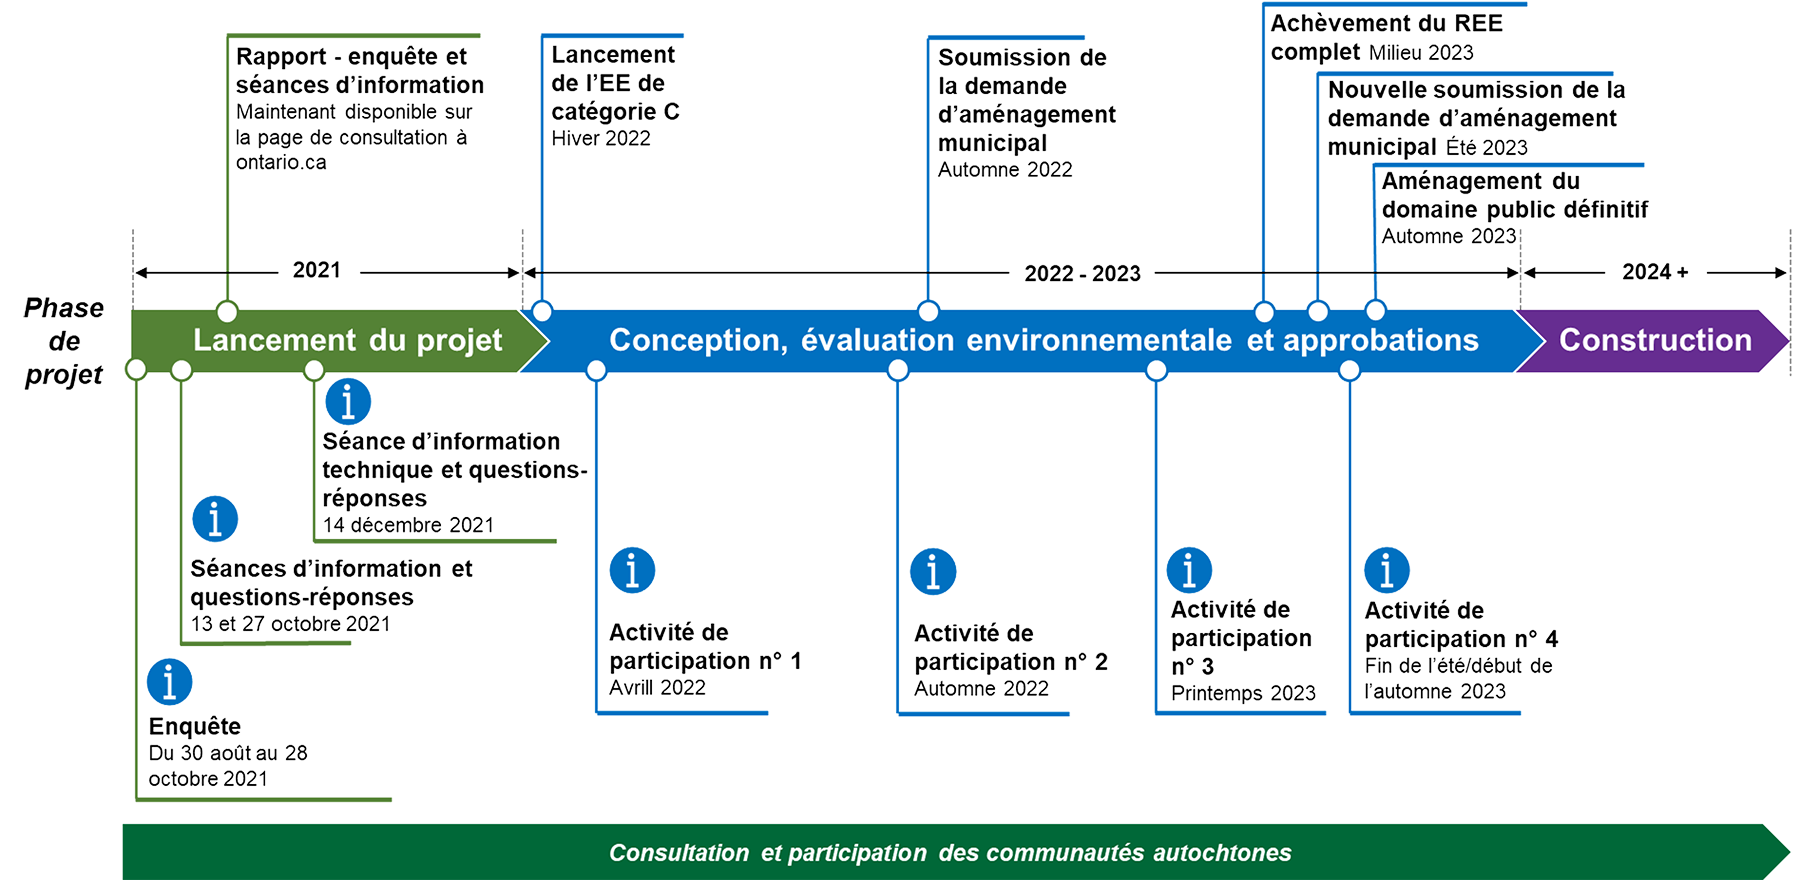 Un tableau chronologique présentant les principales étapes des trois phases du projet, à savoir l’échange d’informations, l’évaluation environnementale et la conception, ainsi que la construction. 